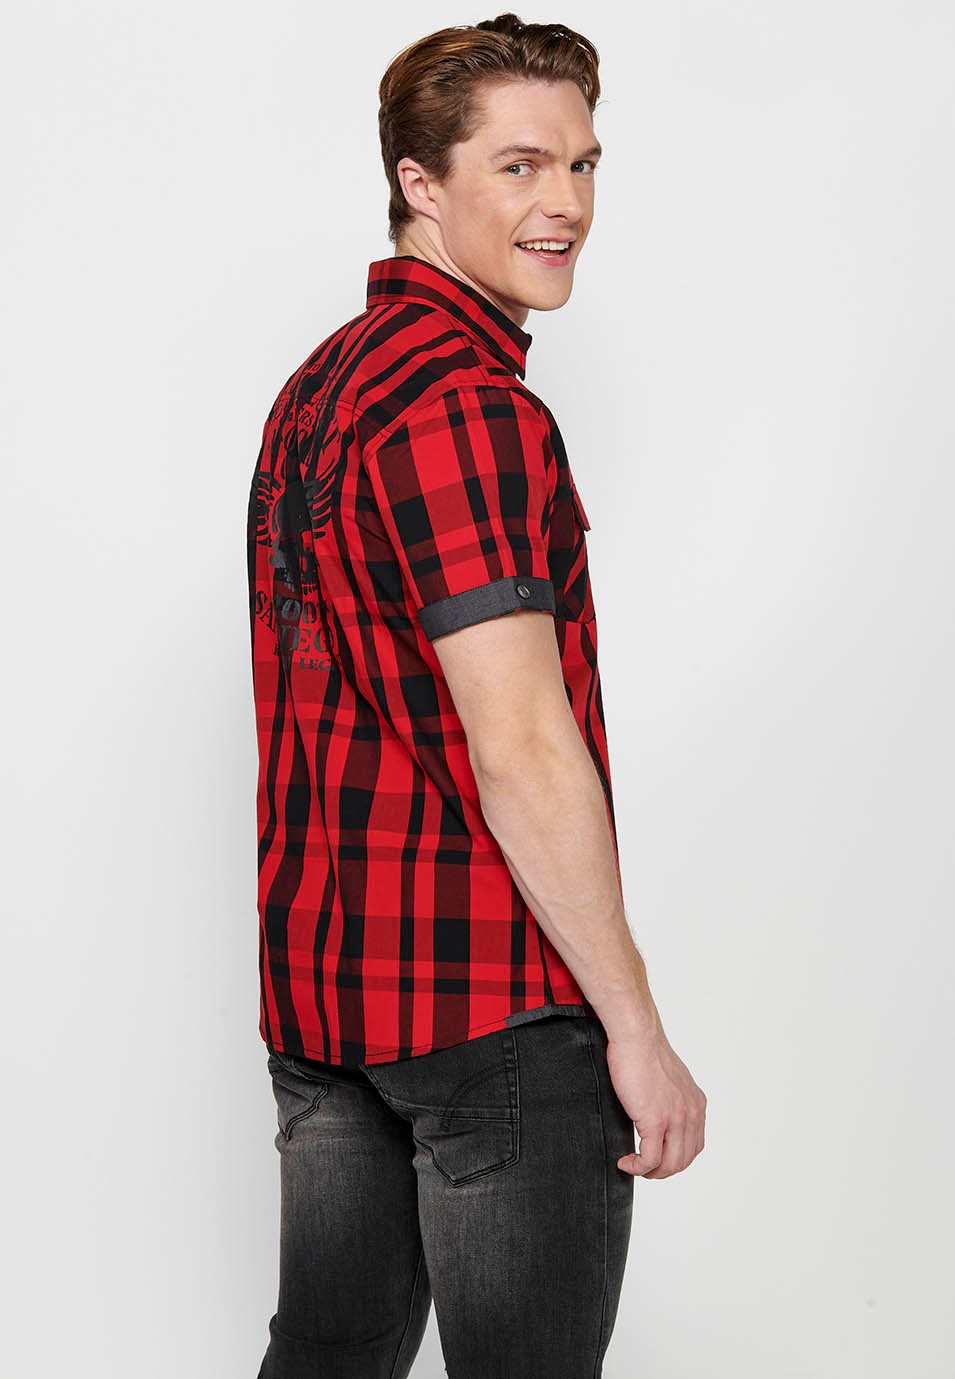 Camisa màniga curta de quadres, color vermell i negre per a homes